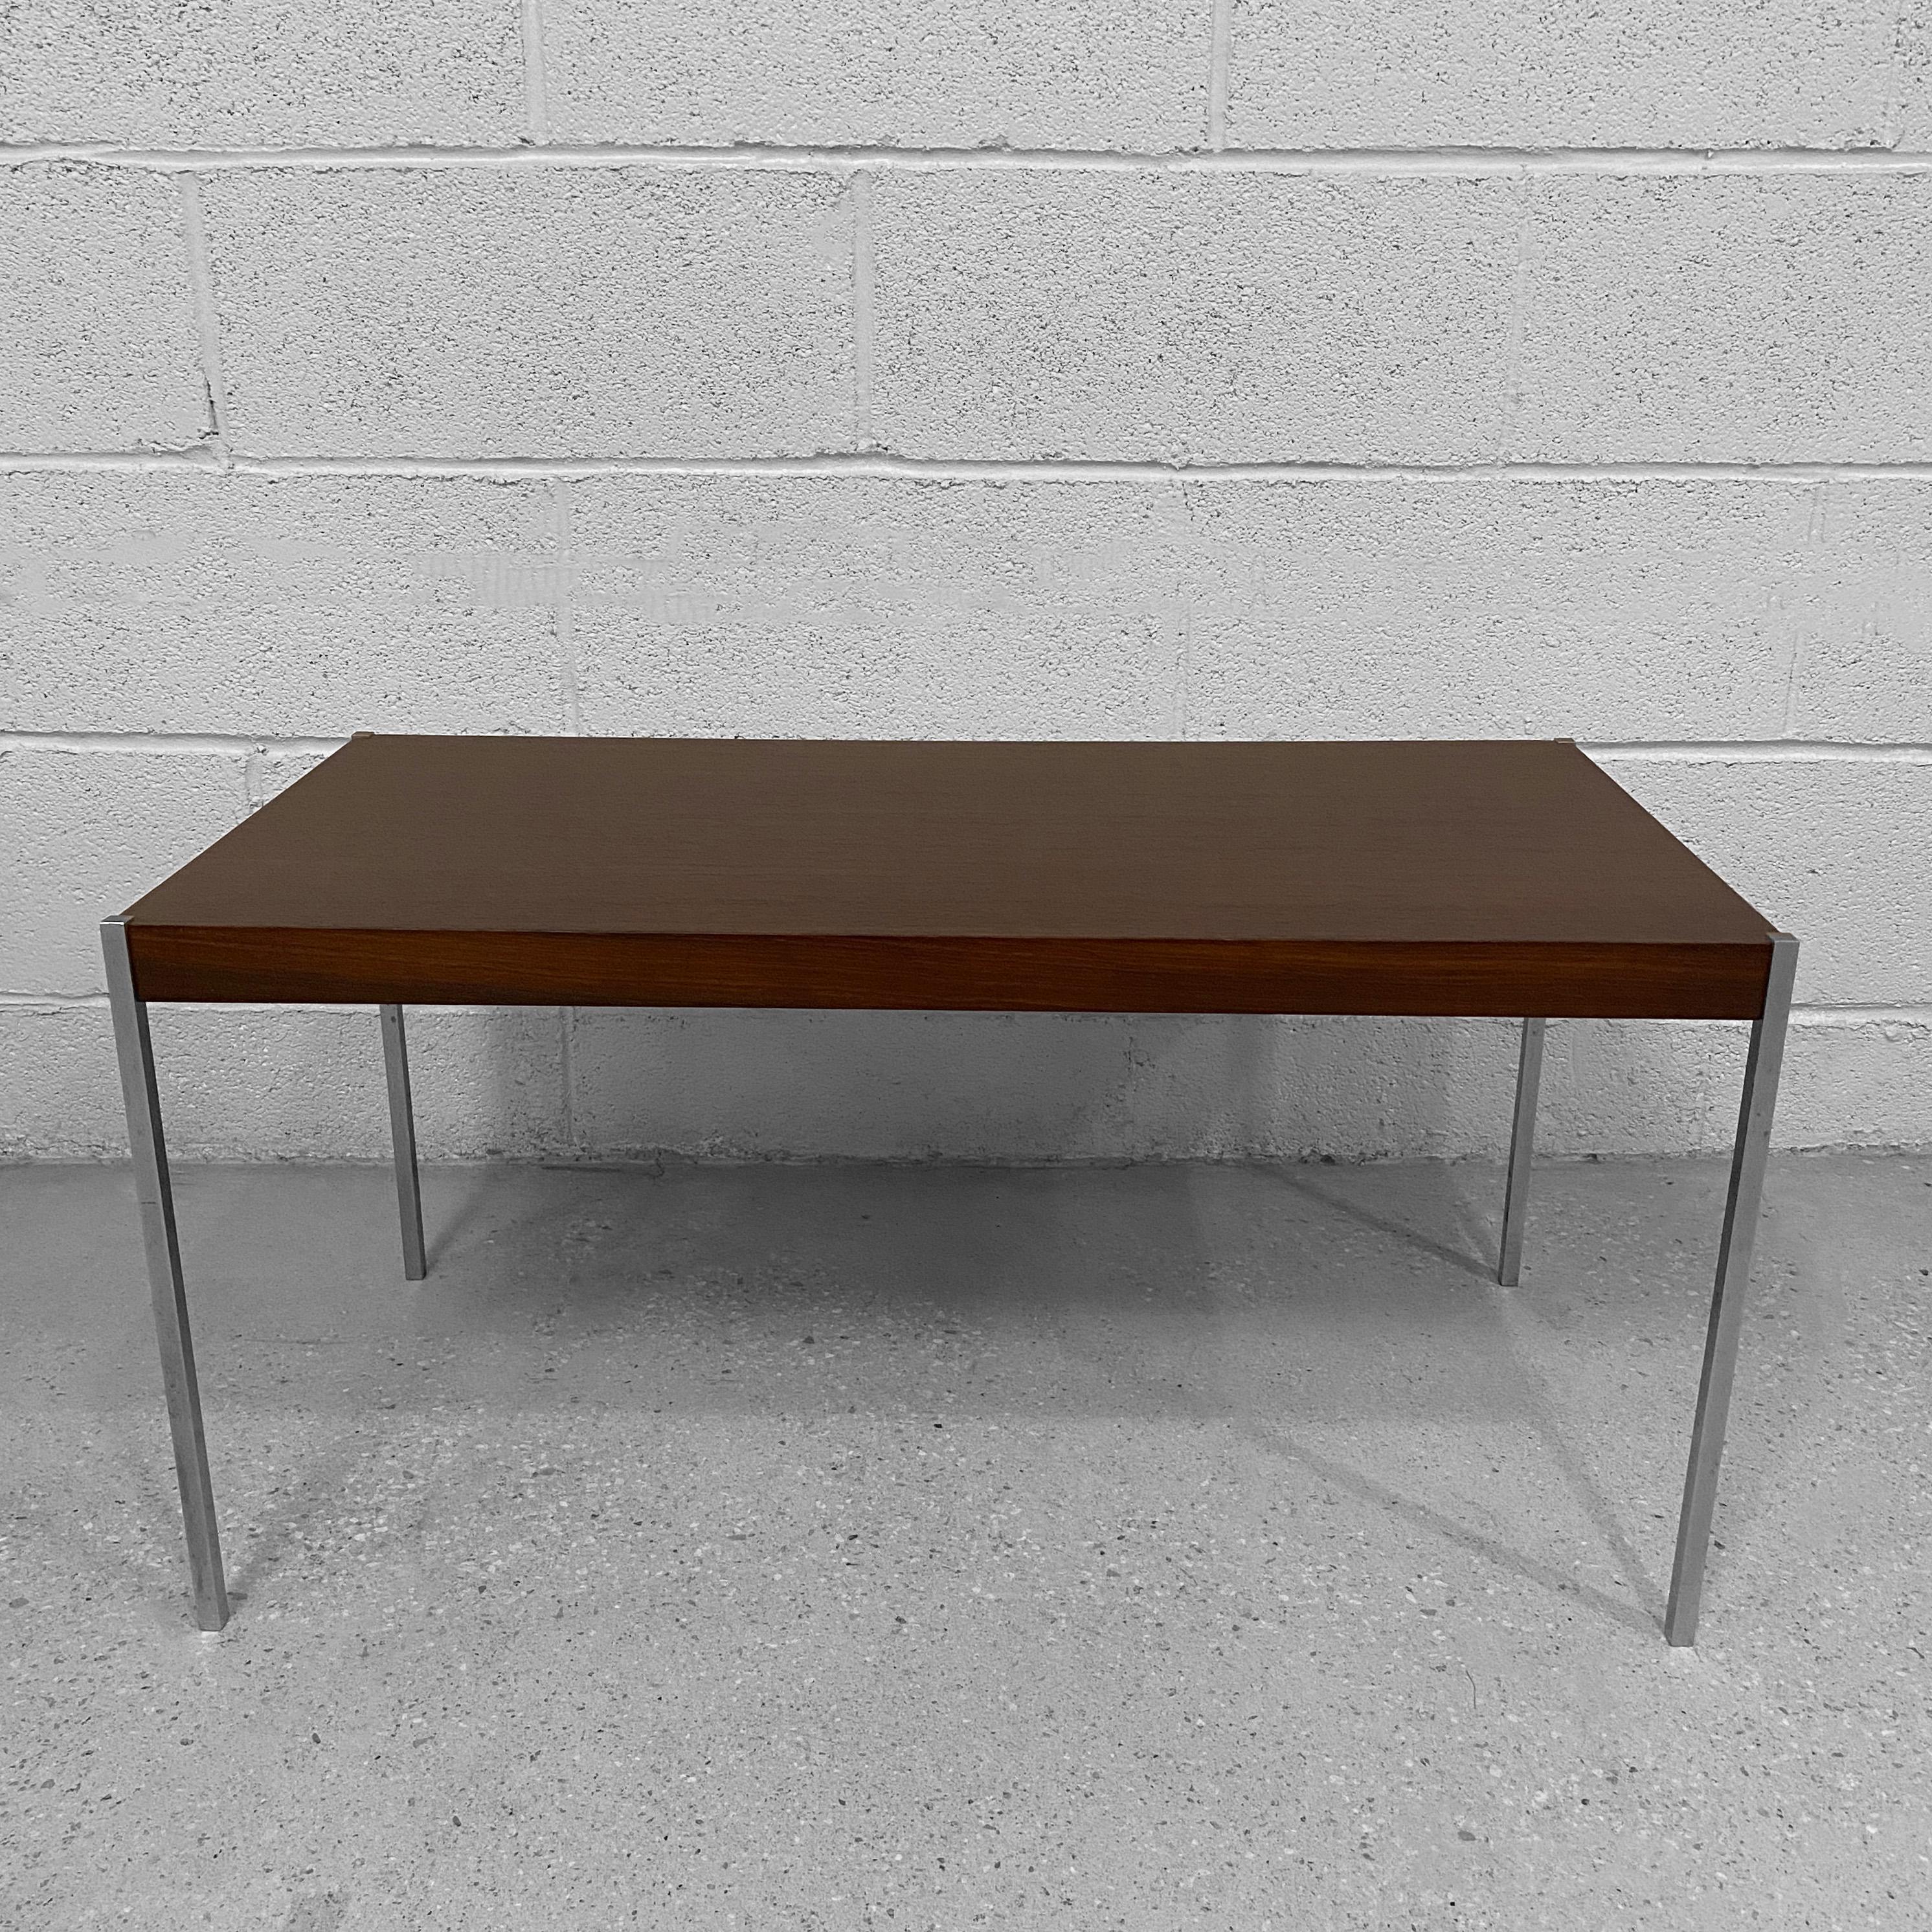 Épurée et minimale, la table basse scandinave moderne de Uno & Östen Kristiansson pour Luxus présente un plateau en bois de rose et de minces pieds en acier.